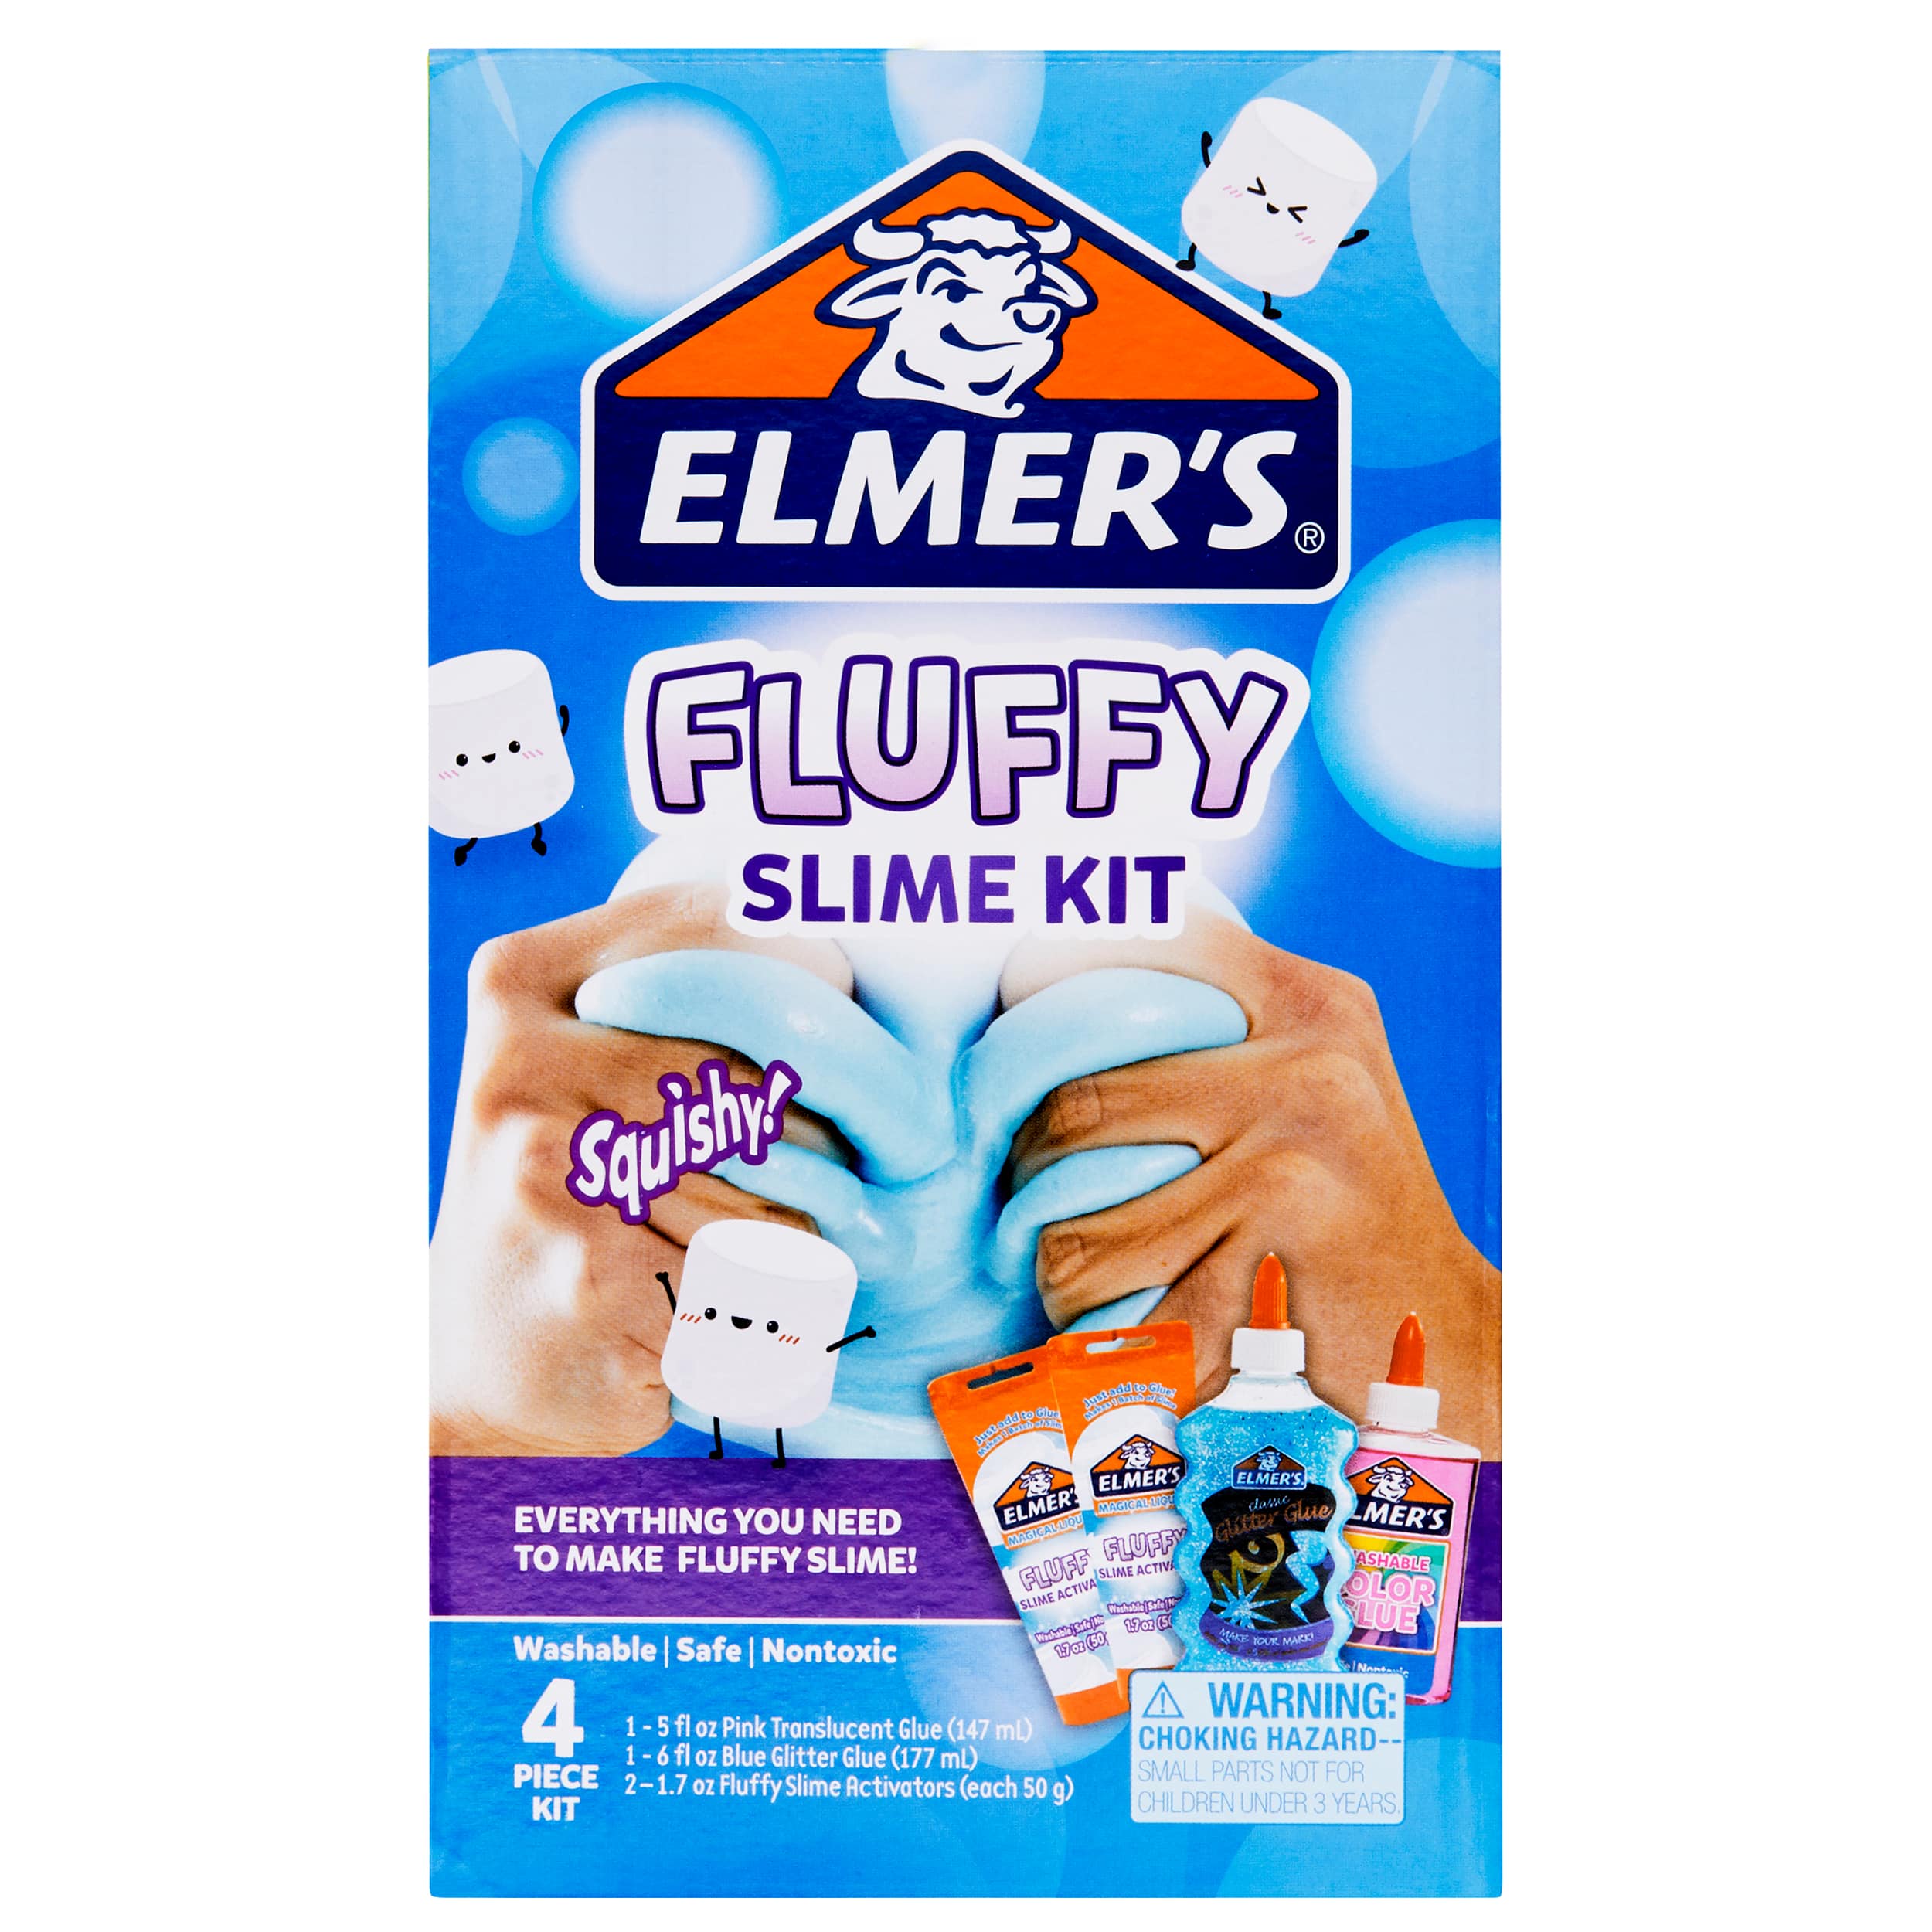 How To Make Fluffy Slime - Glitter, Inc.